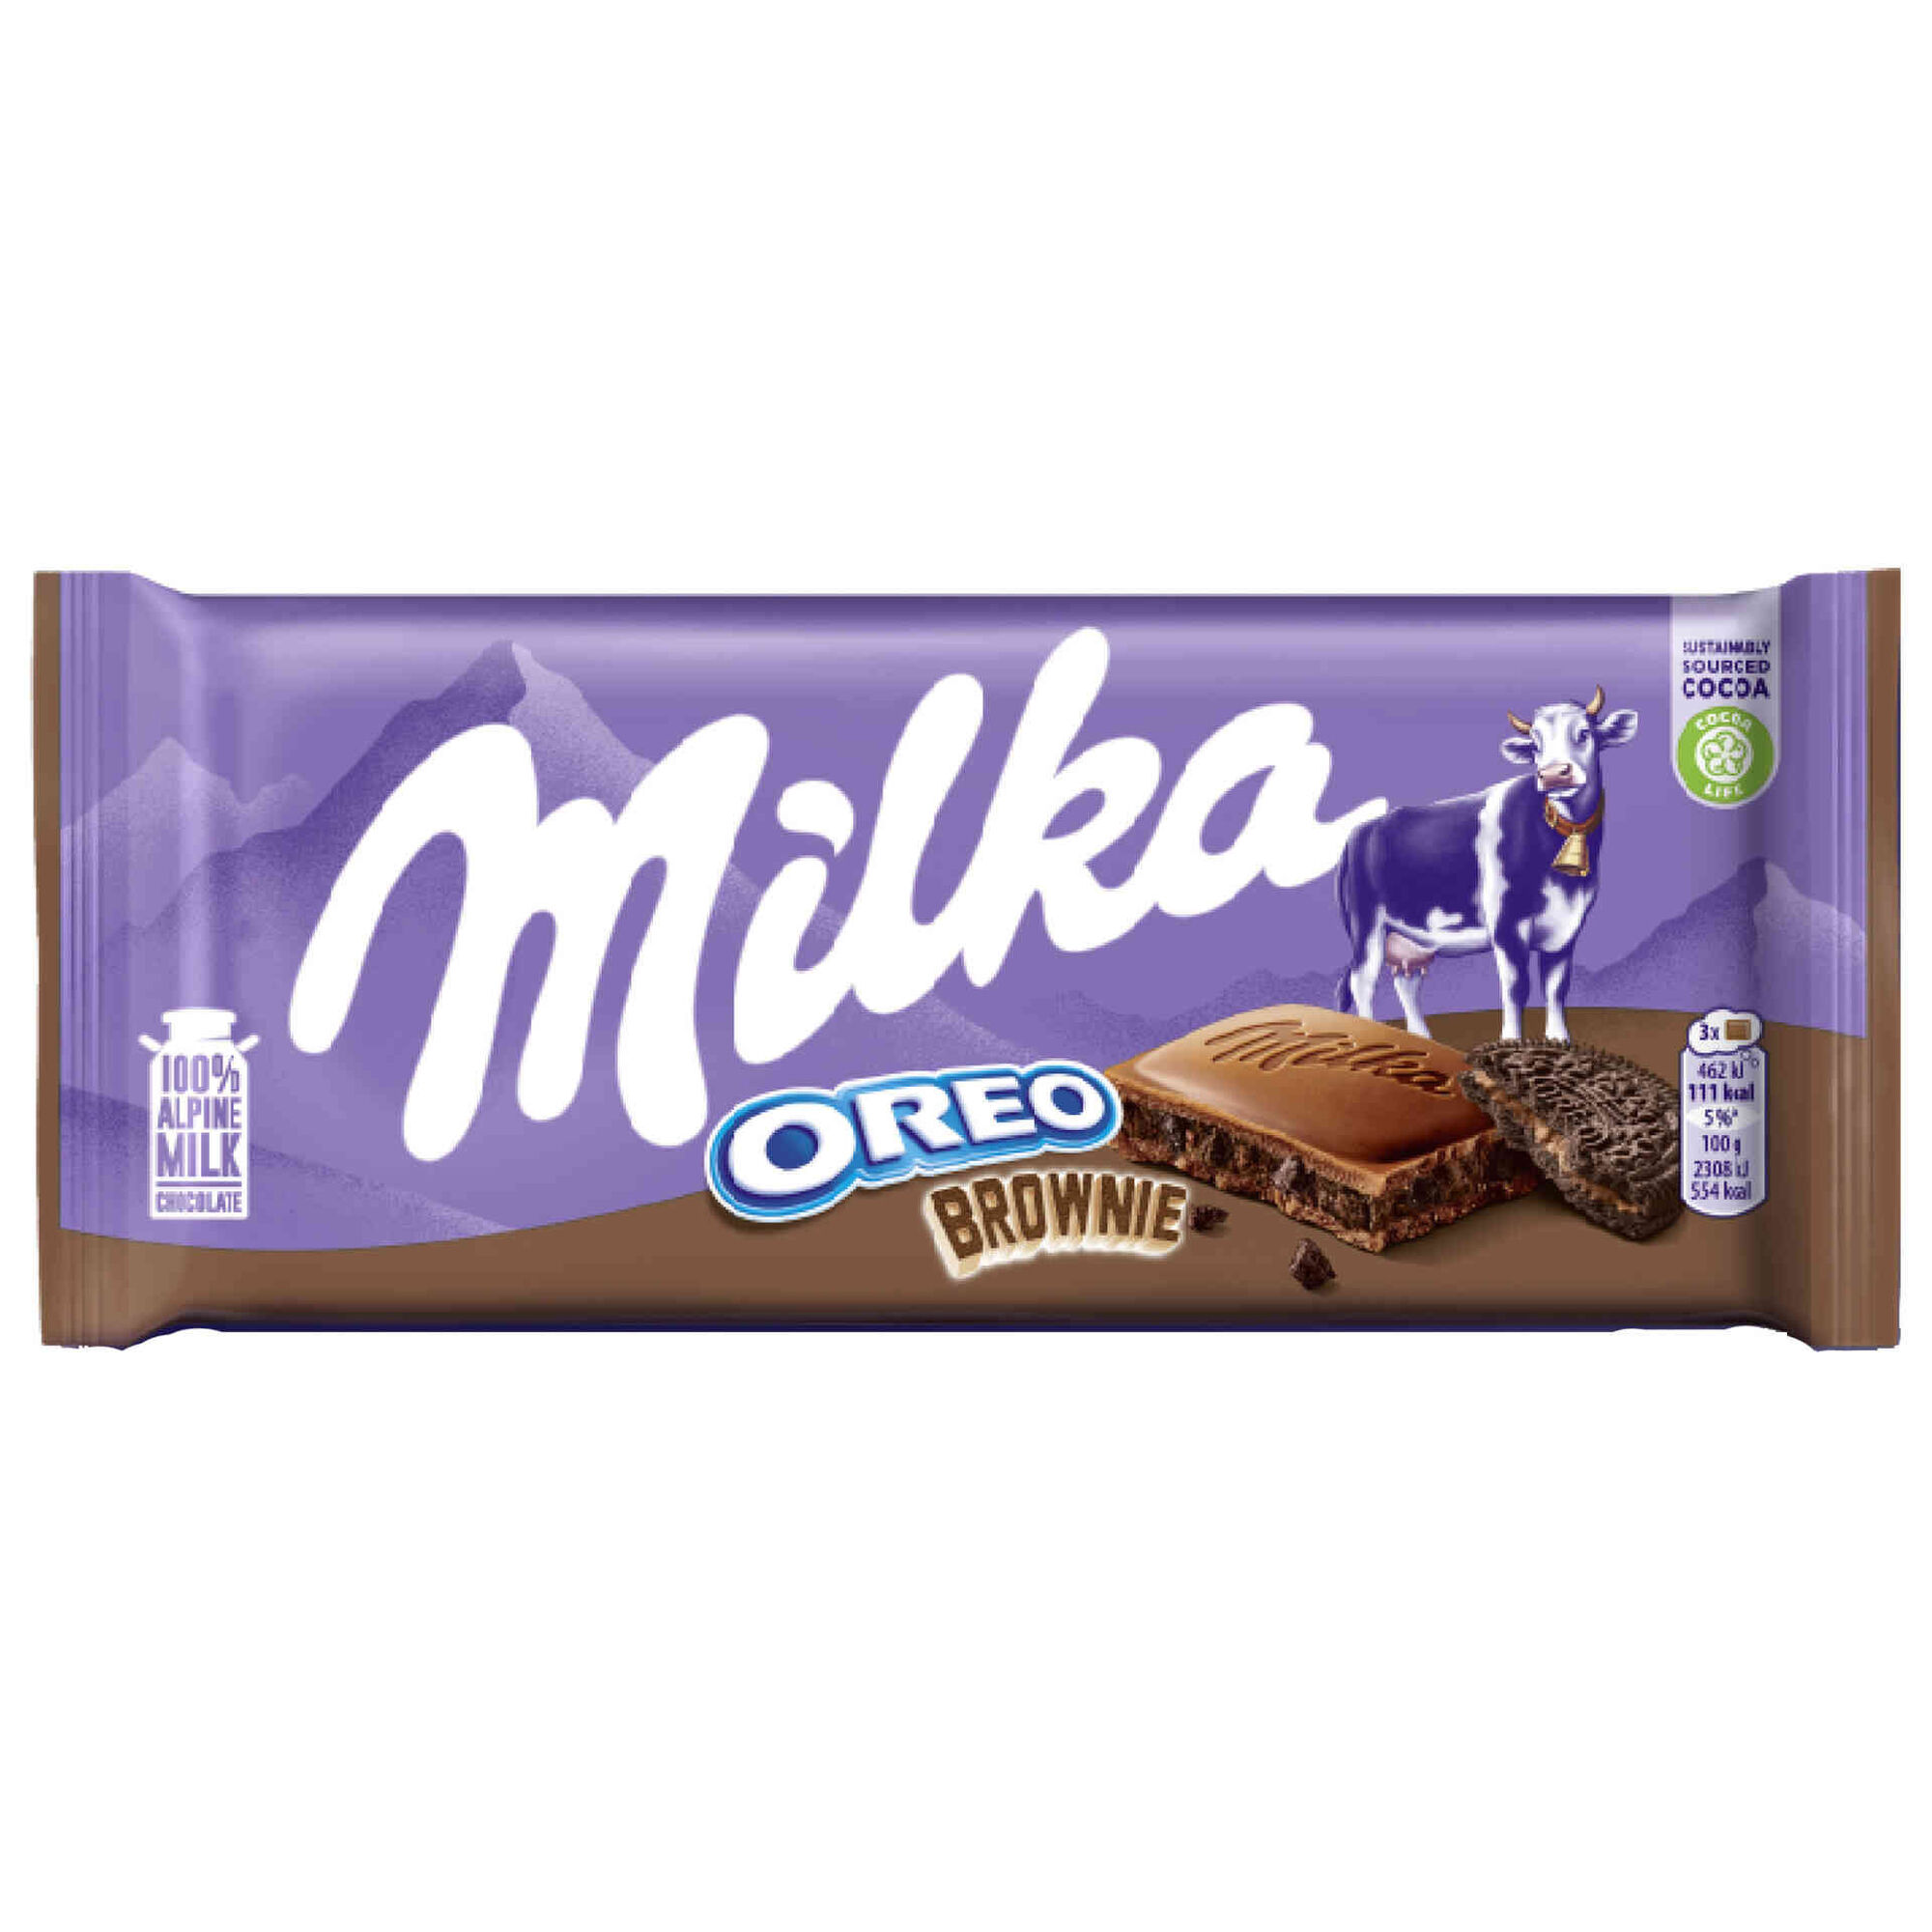 Tablete de Chocolate com Oreo e Brownie